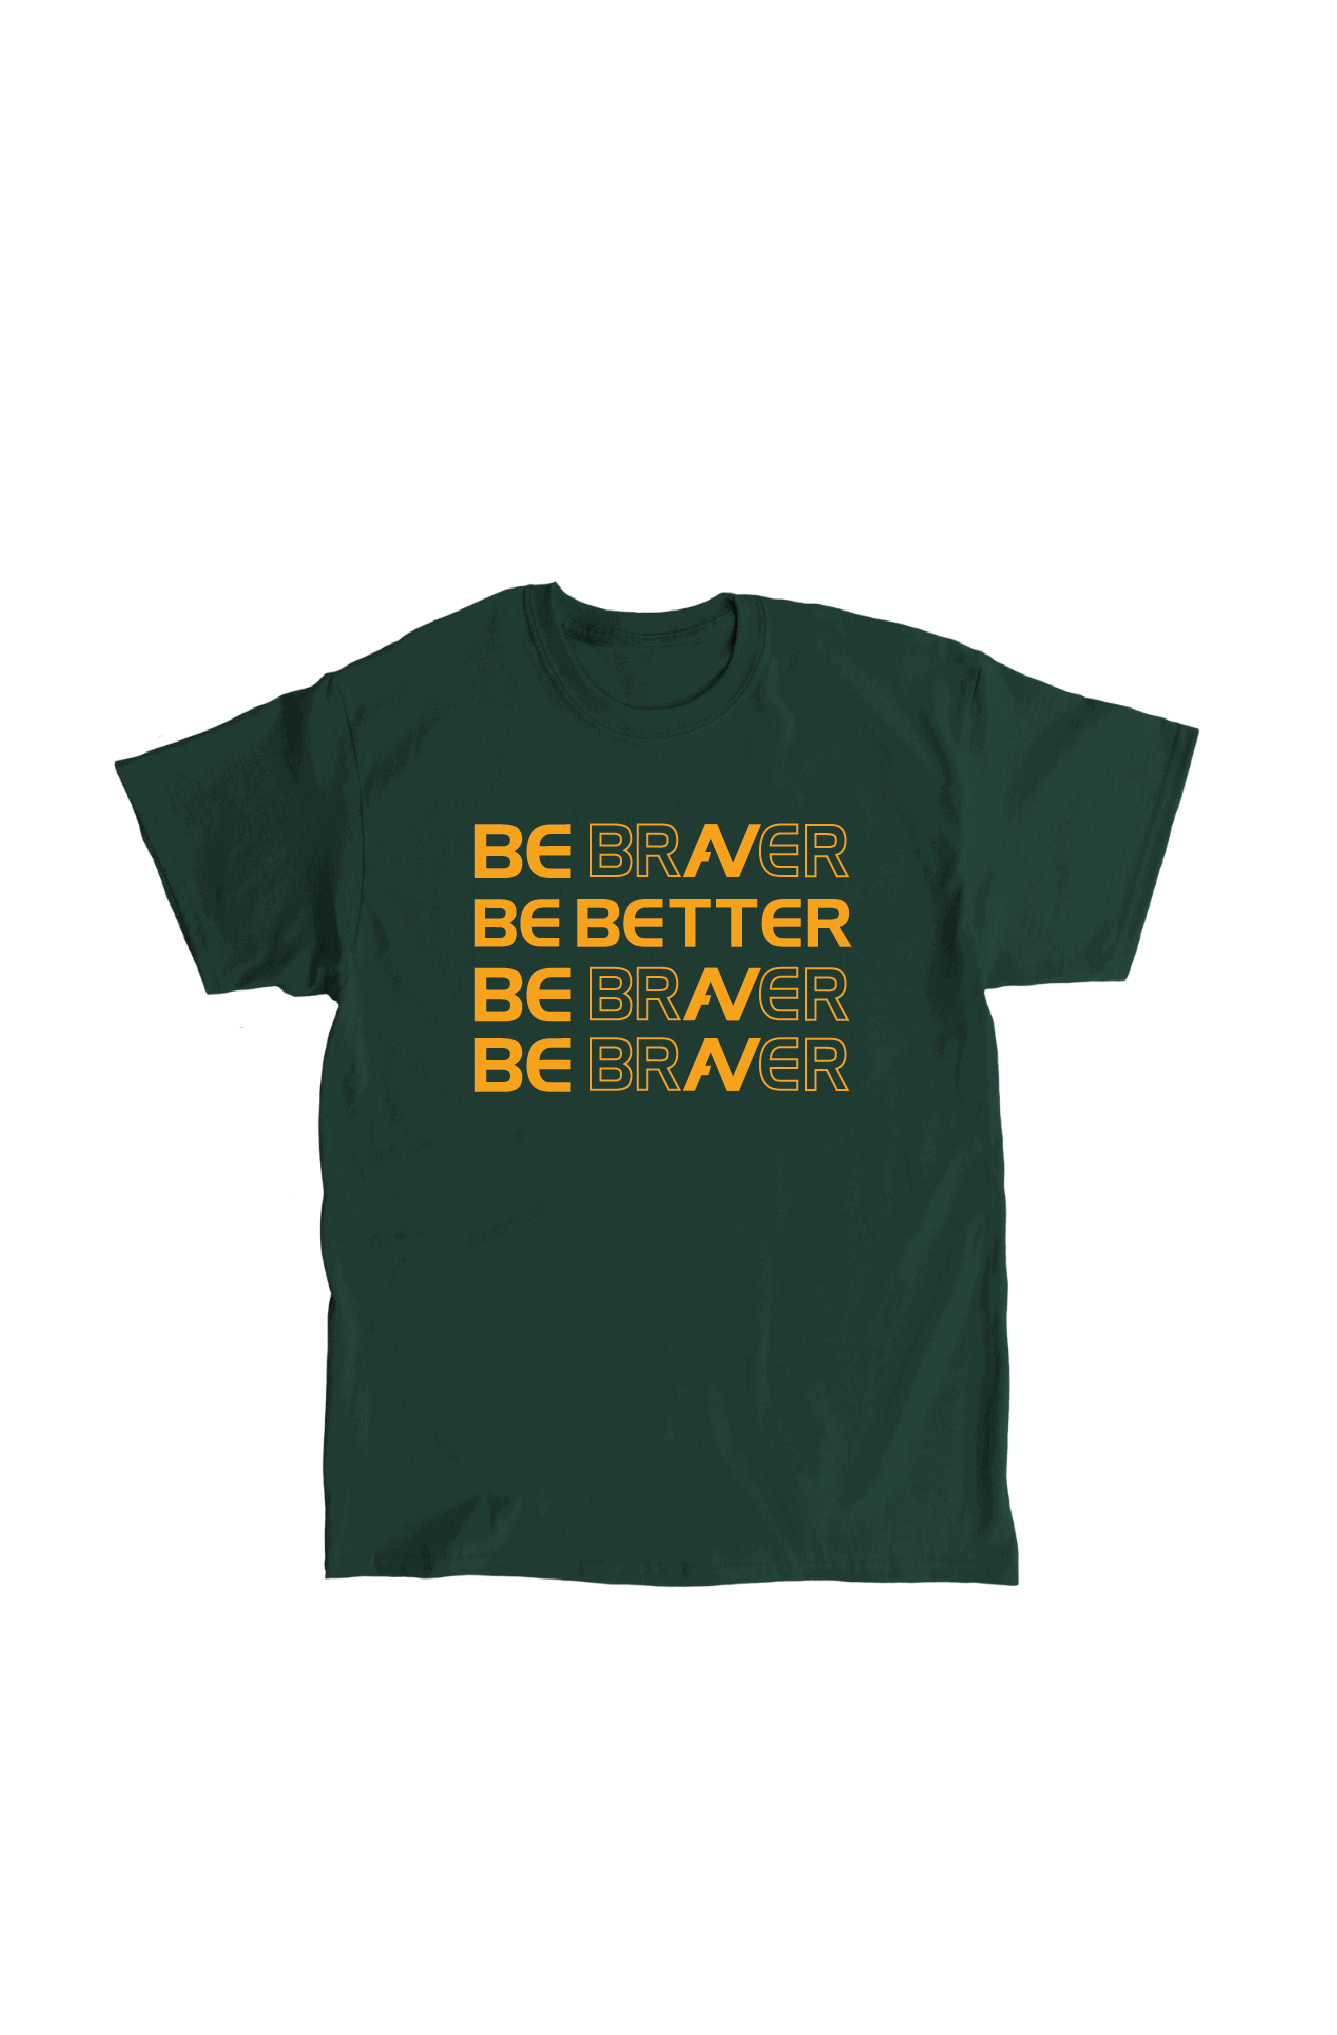 Be Better print on bottle green t-shirt